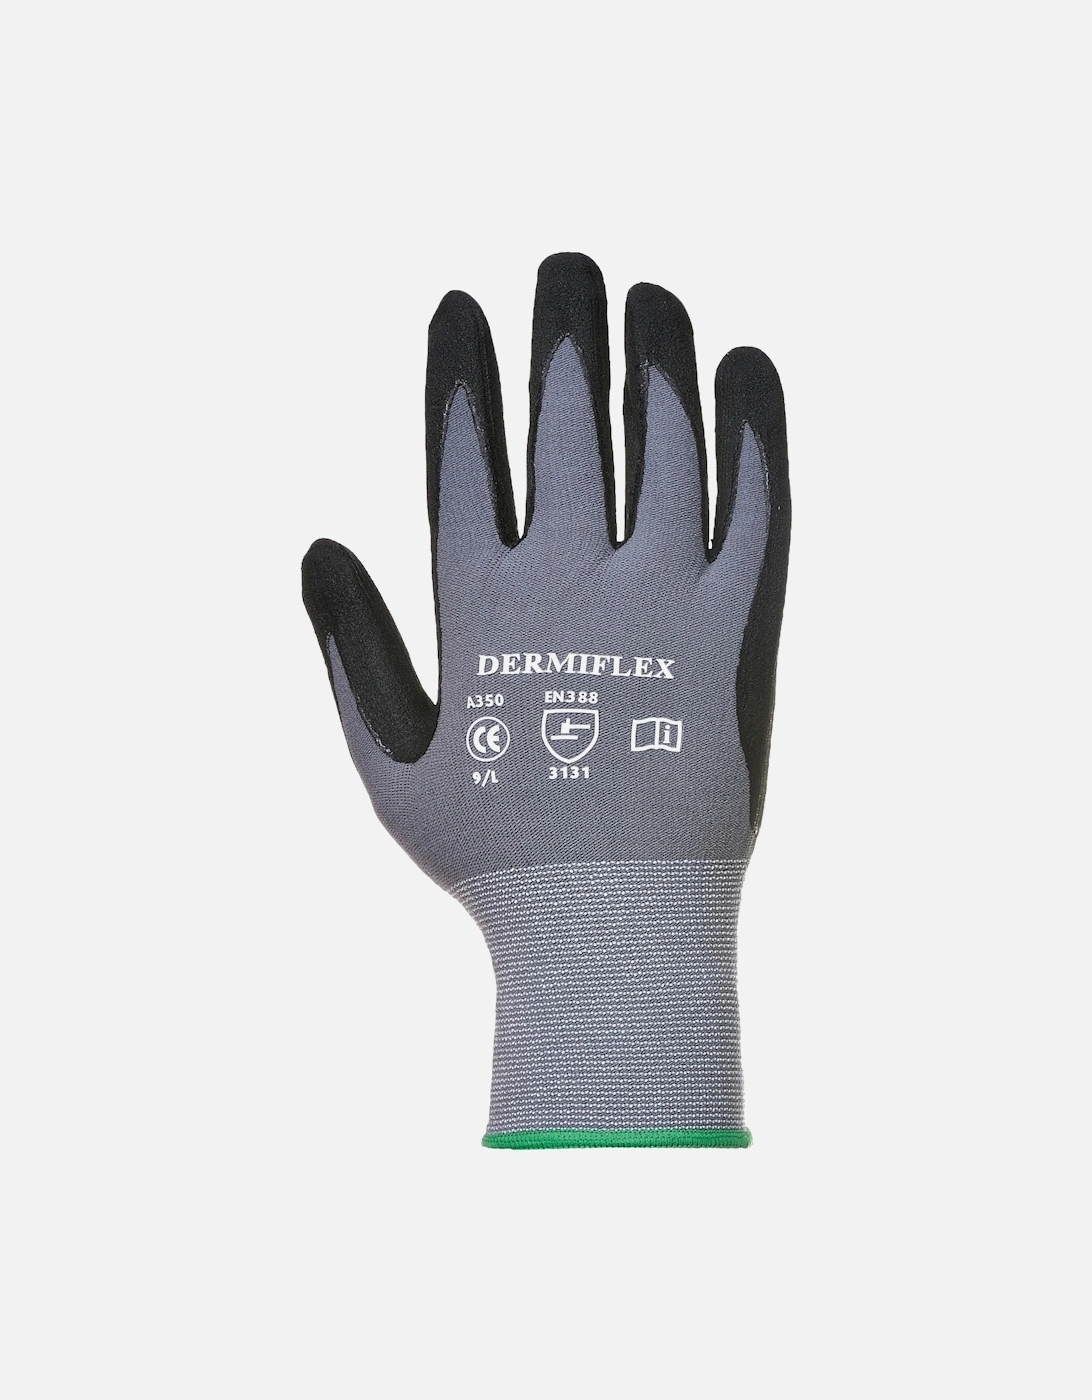 Dermiflex Safety Work Gloves, 2 of 1